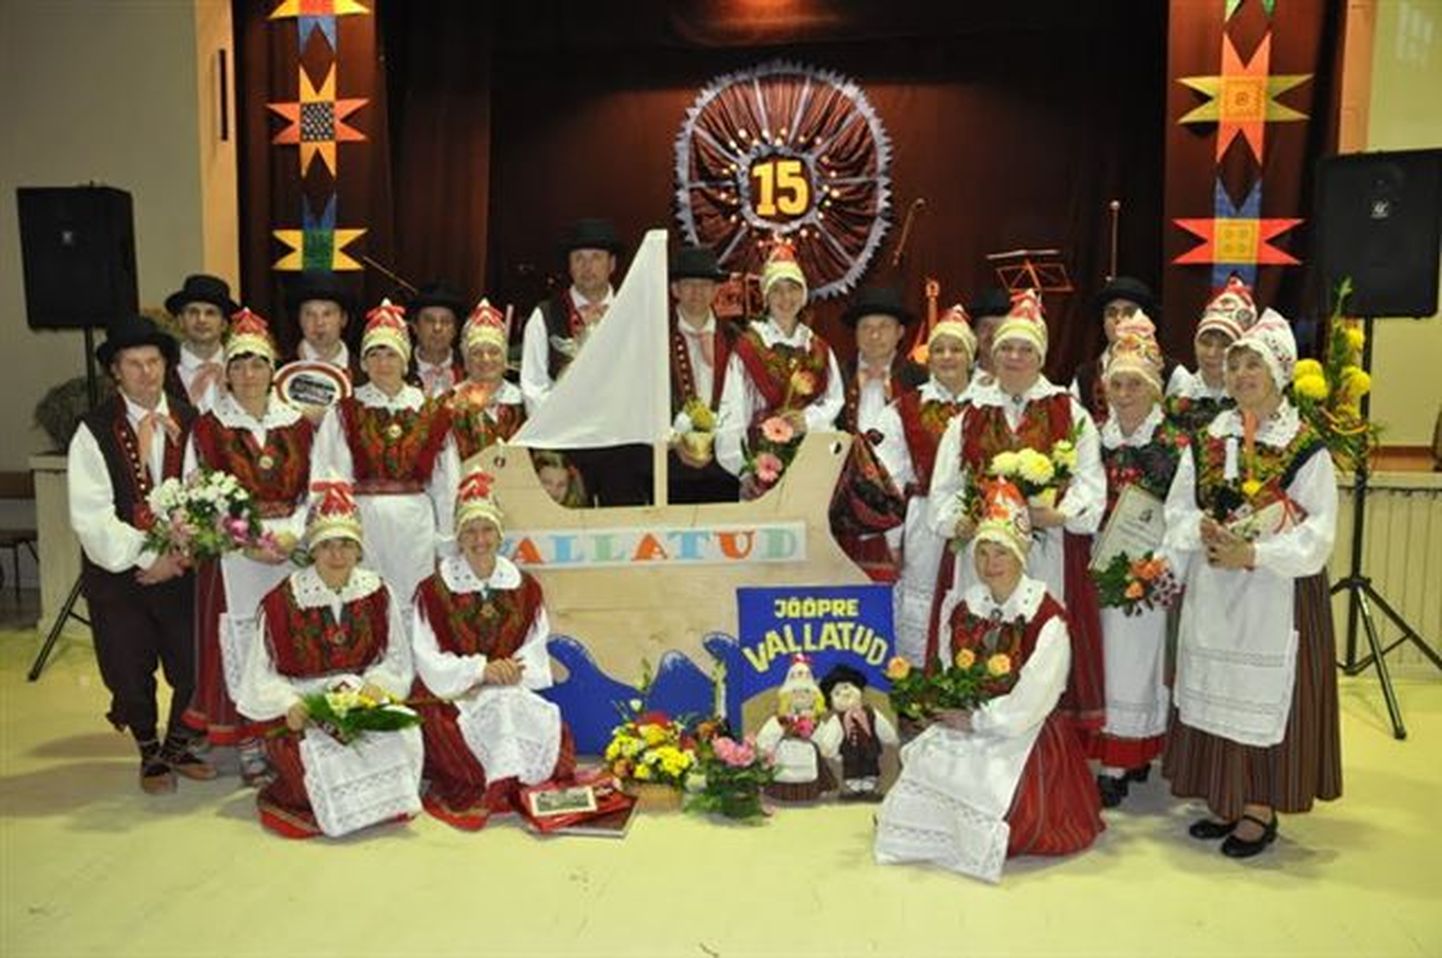 Segarahvatantsurühm Jõõpre Vallatud tähistas 15. aastapäeva.